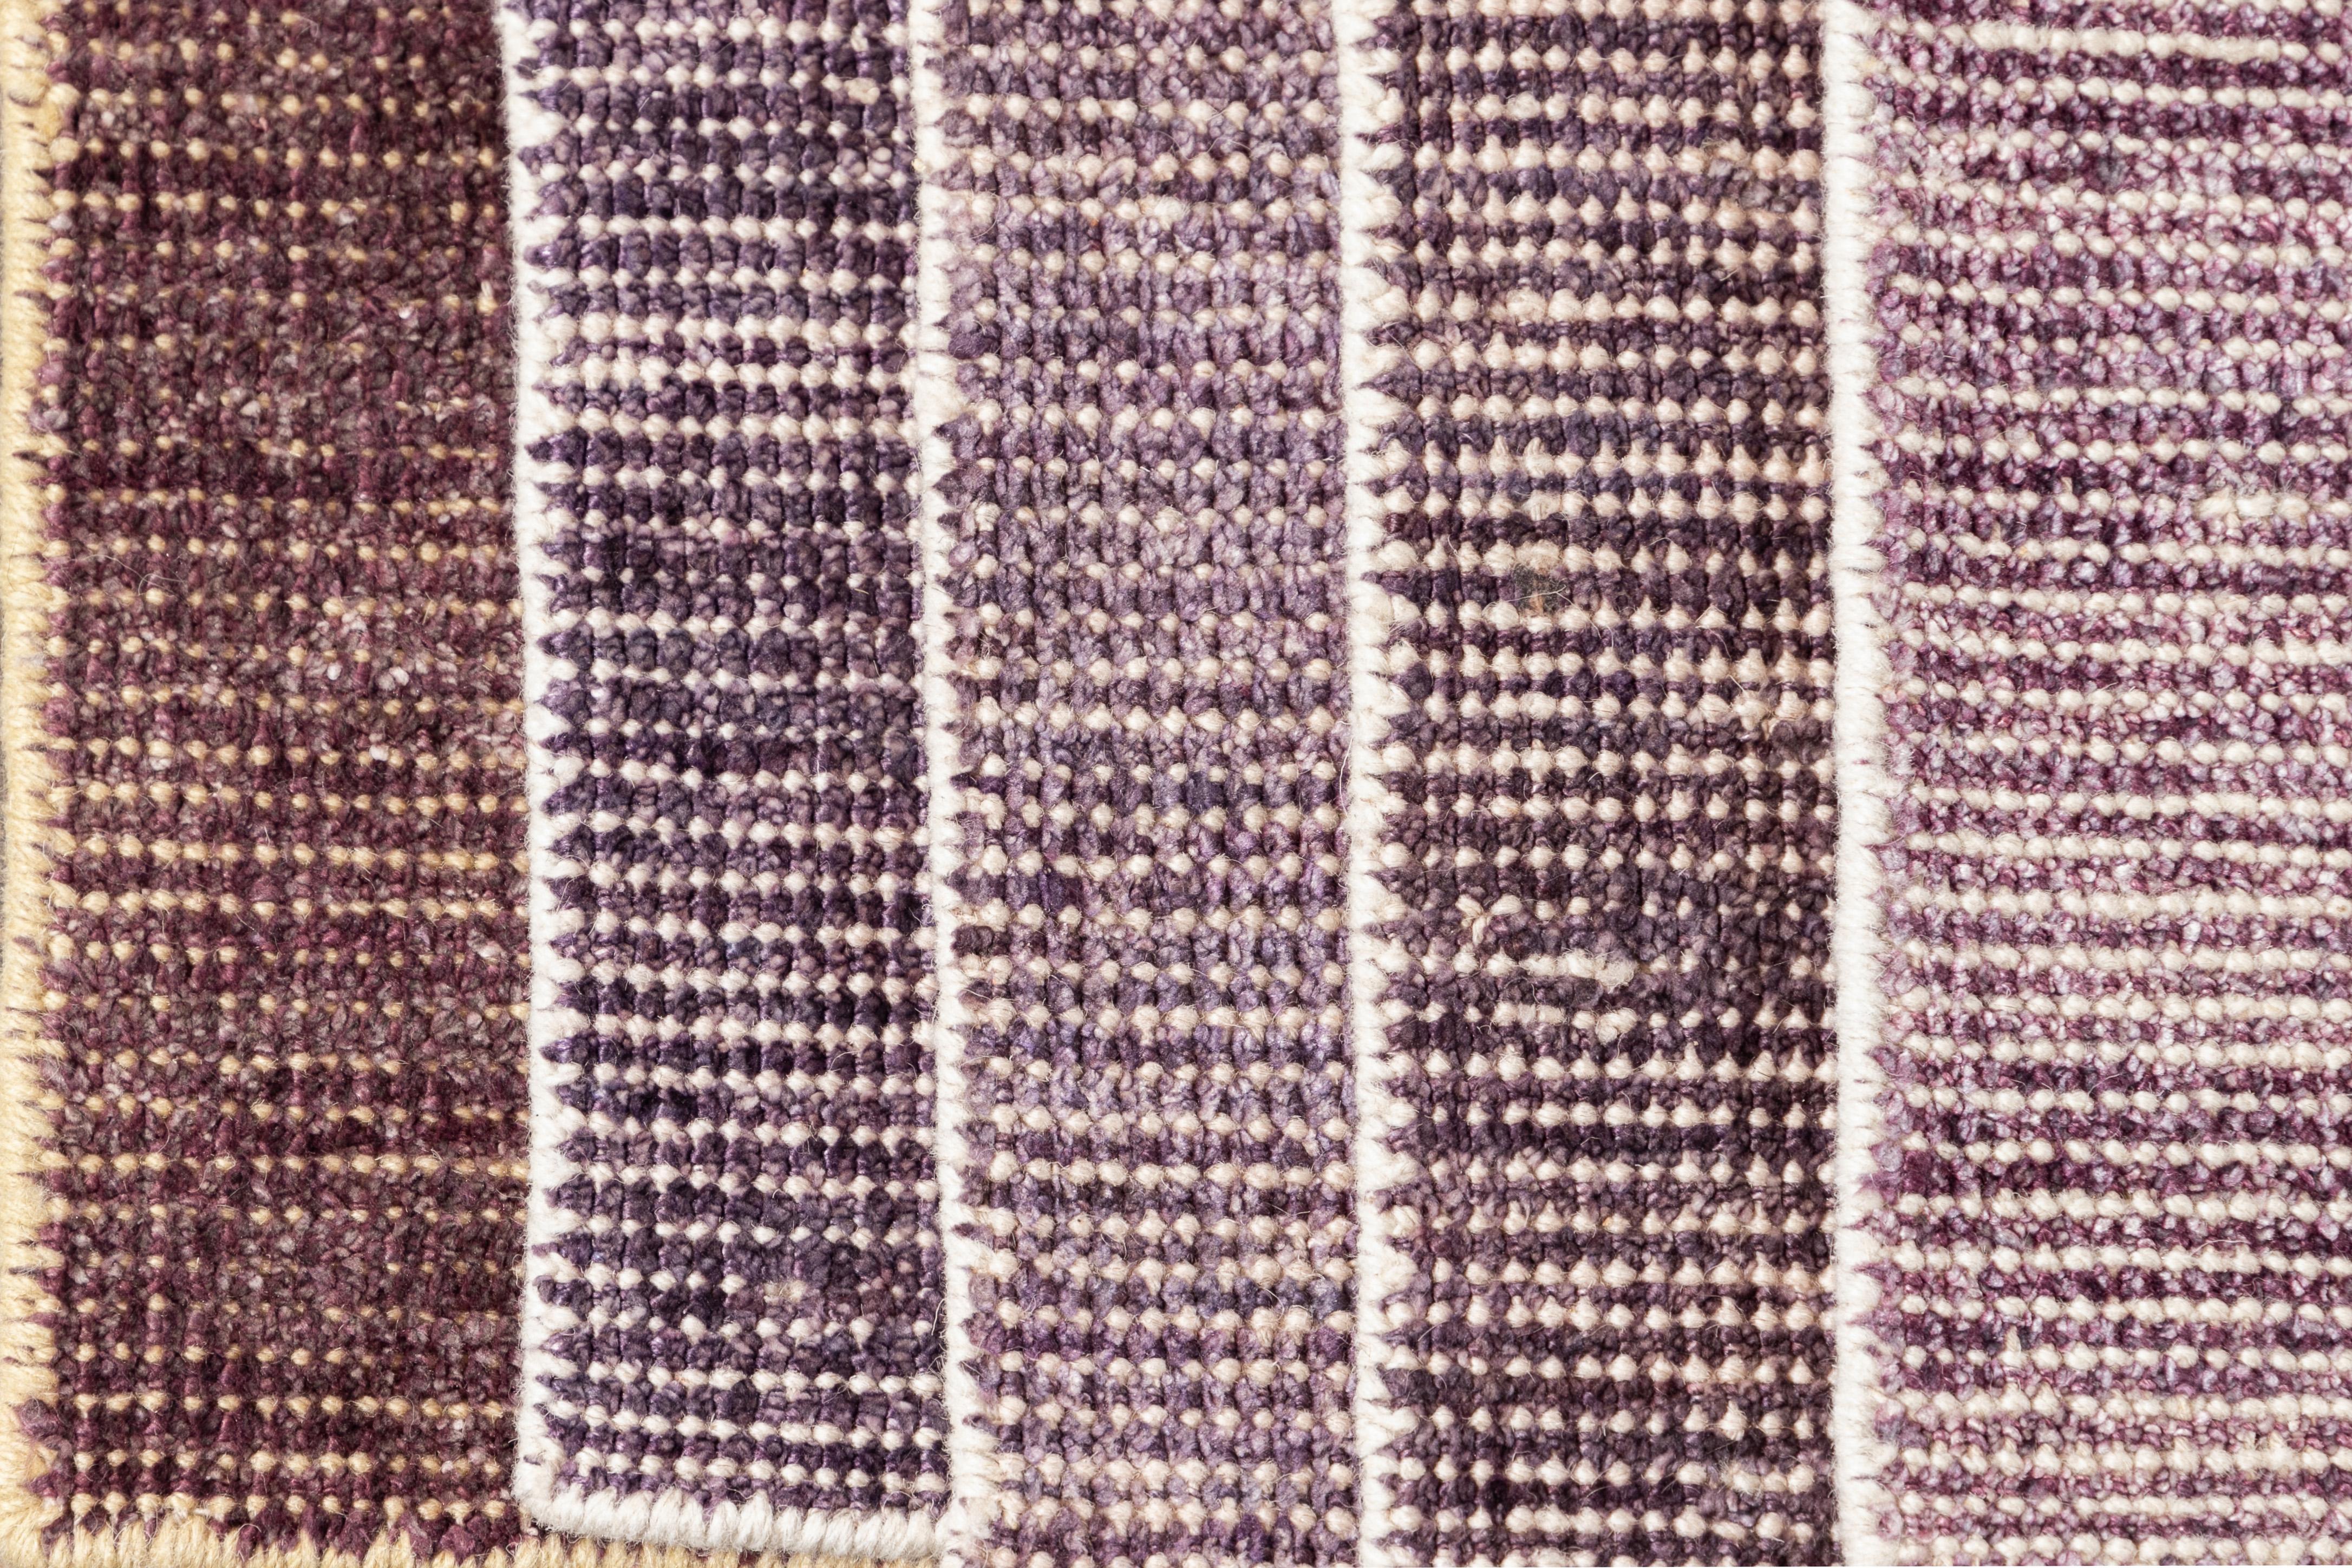 Individueller Boho-Teppich aus Wolle und Seide. Individuelle Größen und Farben auf Bestellung. 

Material: Wolle/Bambusseide 
Vorlaufzeit: Ungefähr 15-20 Wochen verfügbar 
Farben: über 100 Farbtöne, hergestellt in Indien.
Der angegebene Preis